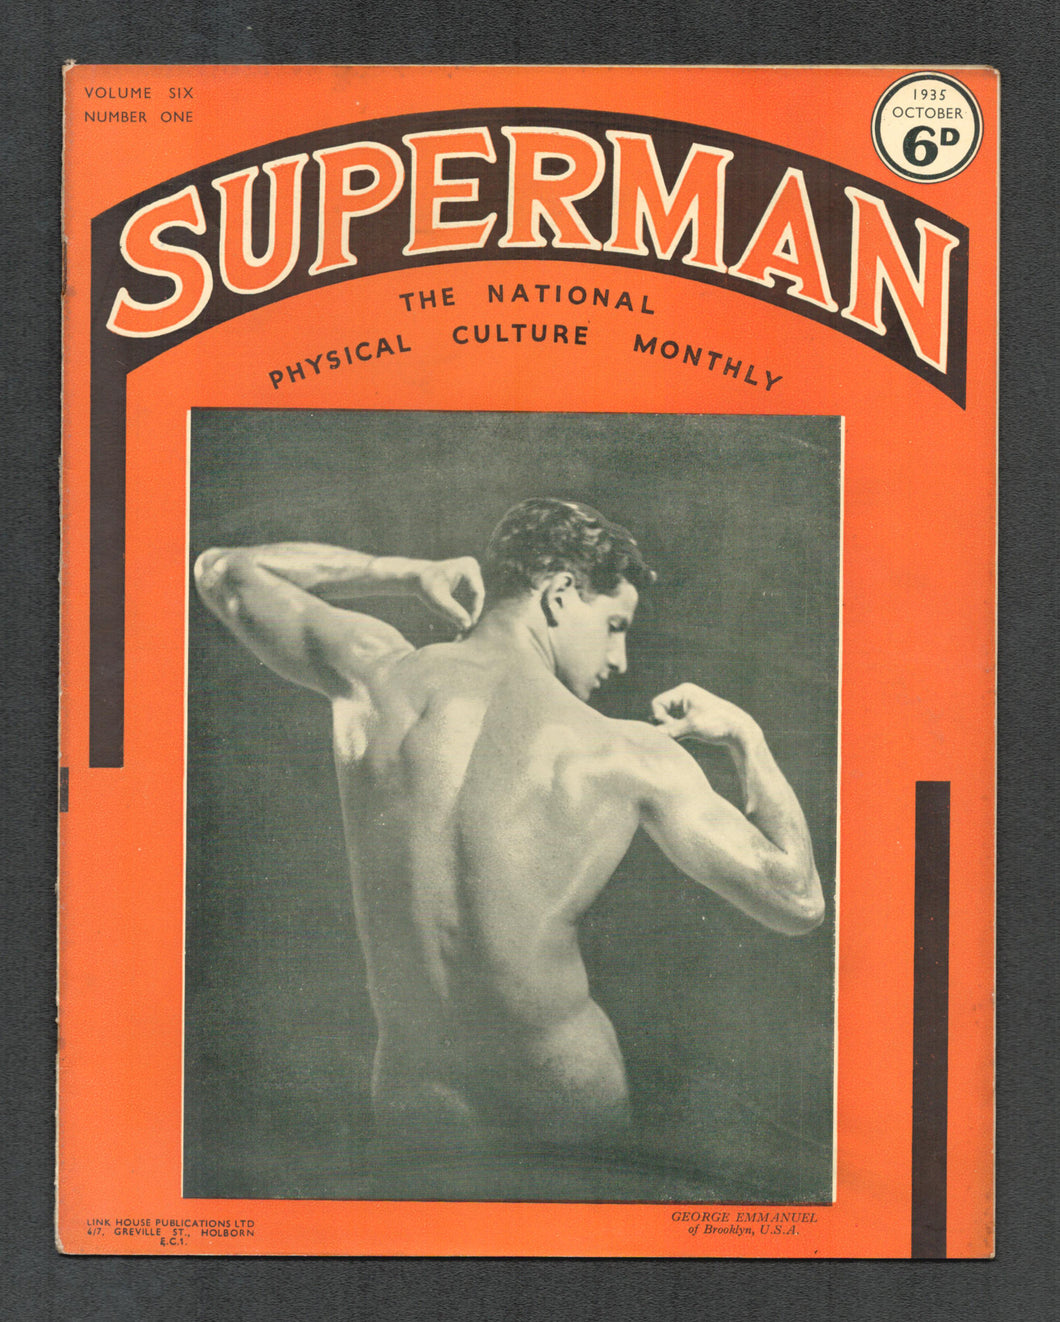 Superman Vol 6 No 1 Oct 1935